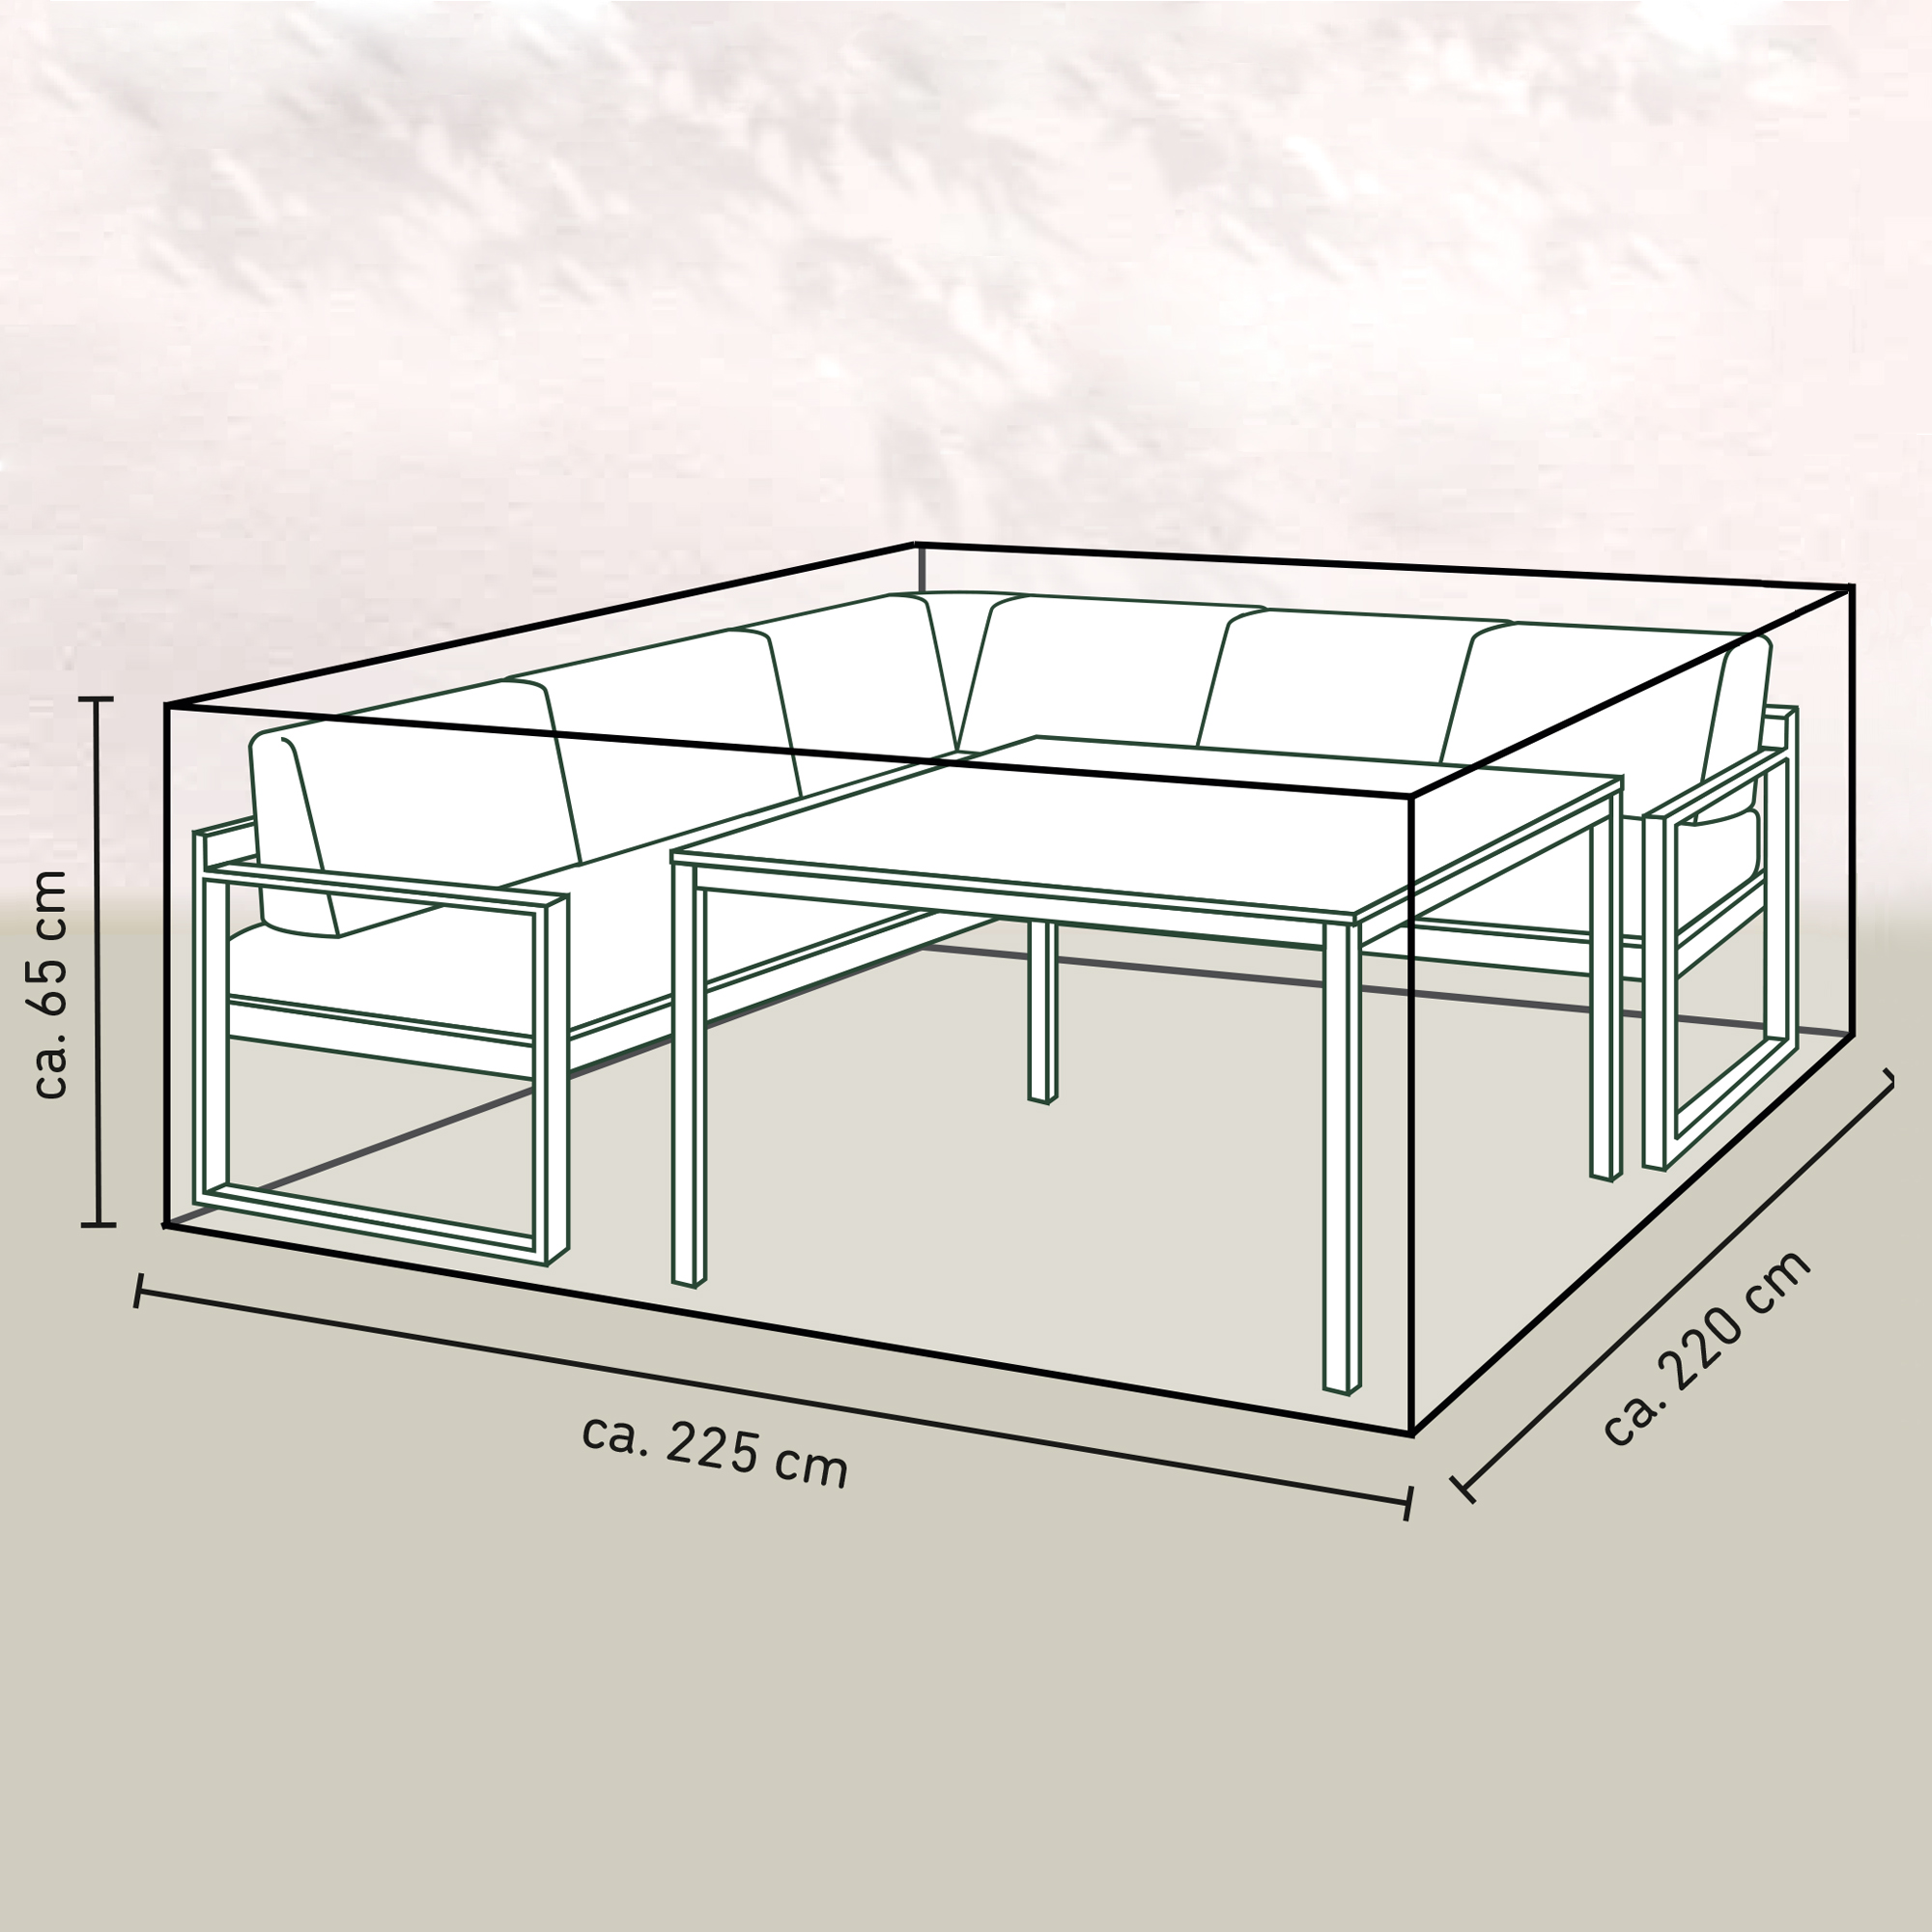 Lounge-Set-Schutzhülle für Möbel inkl. Tisch bis zu 2,2 m Länge + product picture